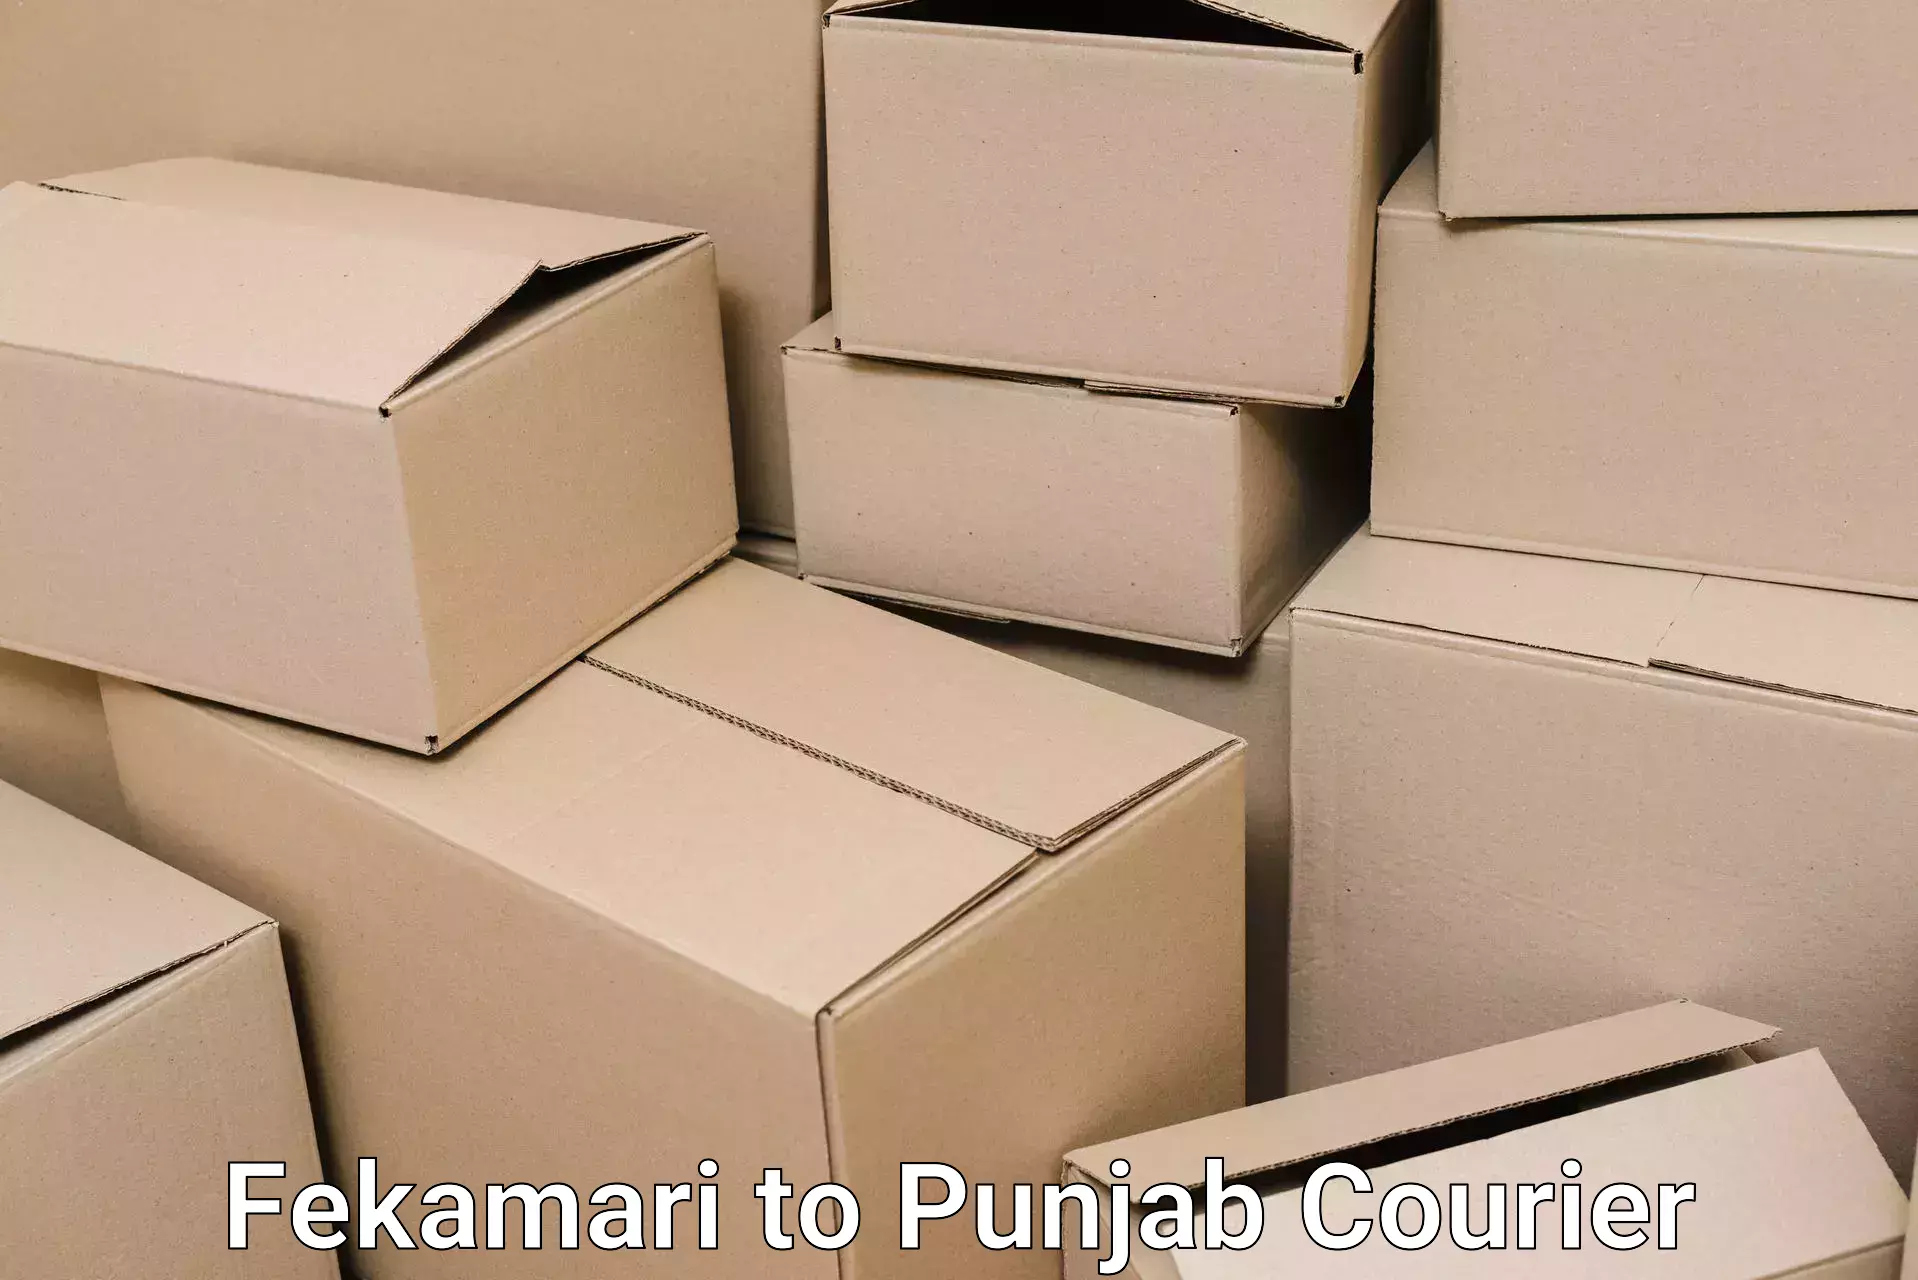 Home goods moving company Fekamari to Central University of Punjab Bathinda